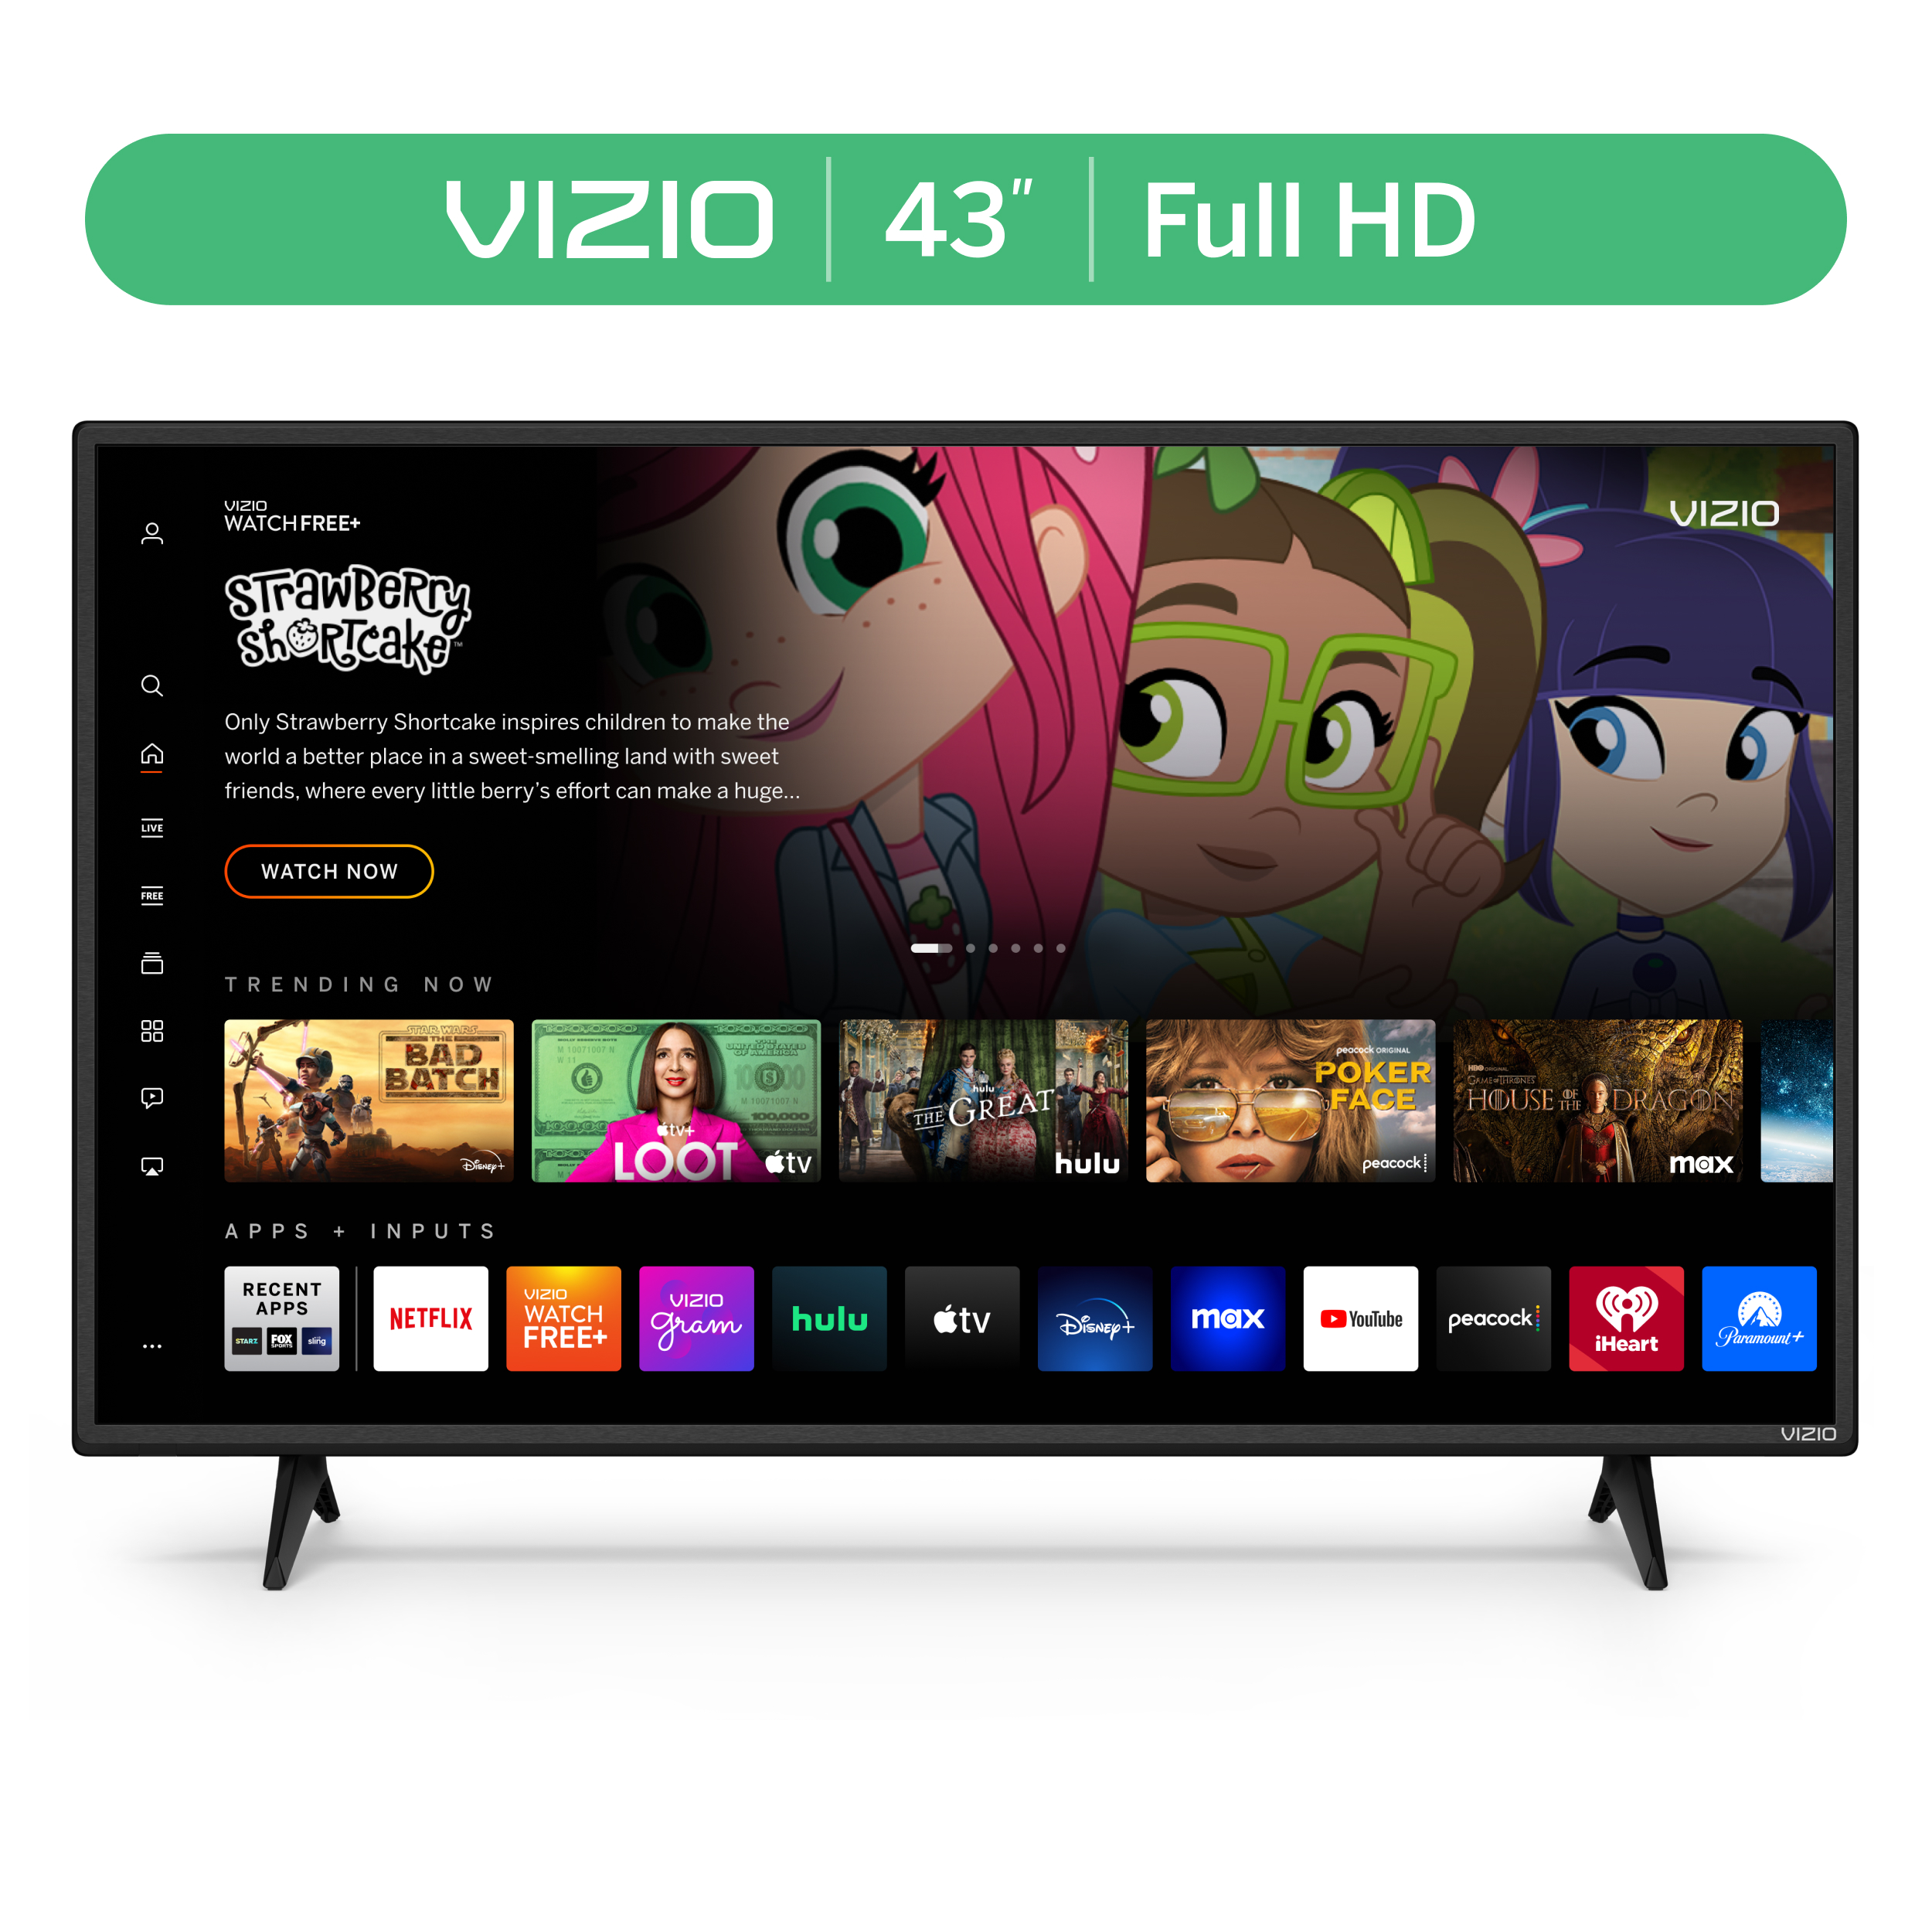 VIZIO 43" Class D-Series FHD LED Smart TV D43f-J04 - image 1 of 18